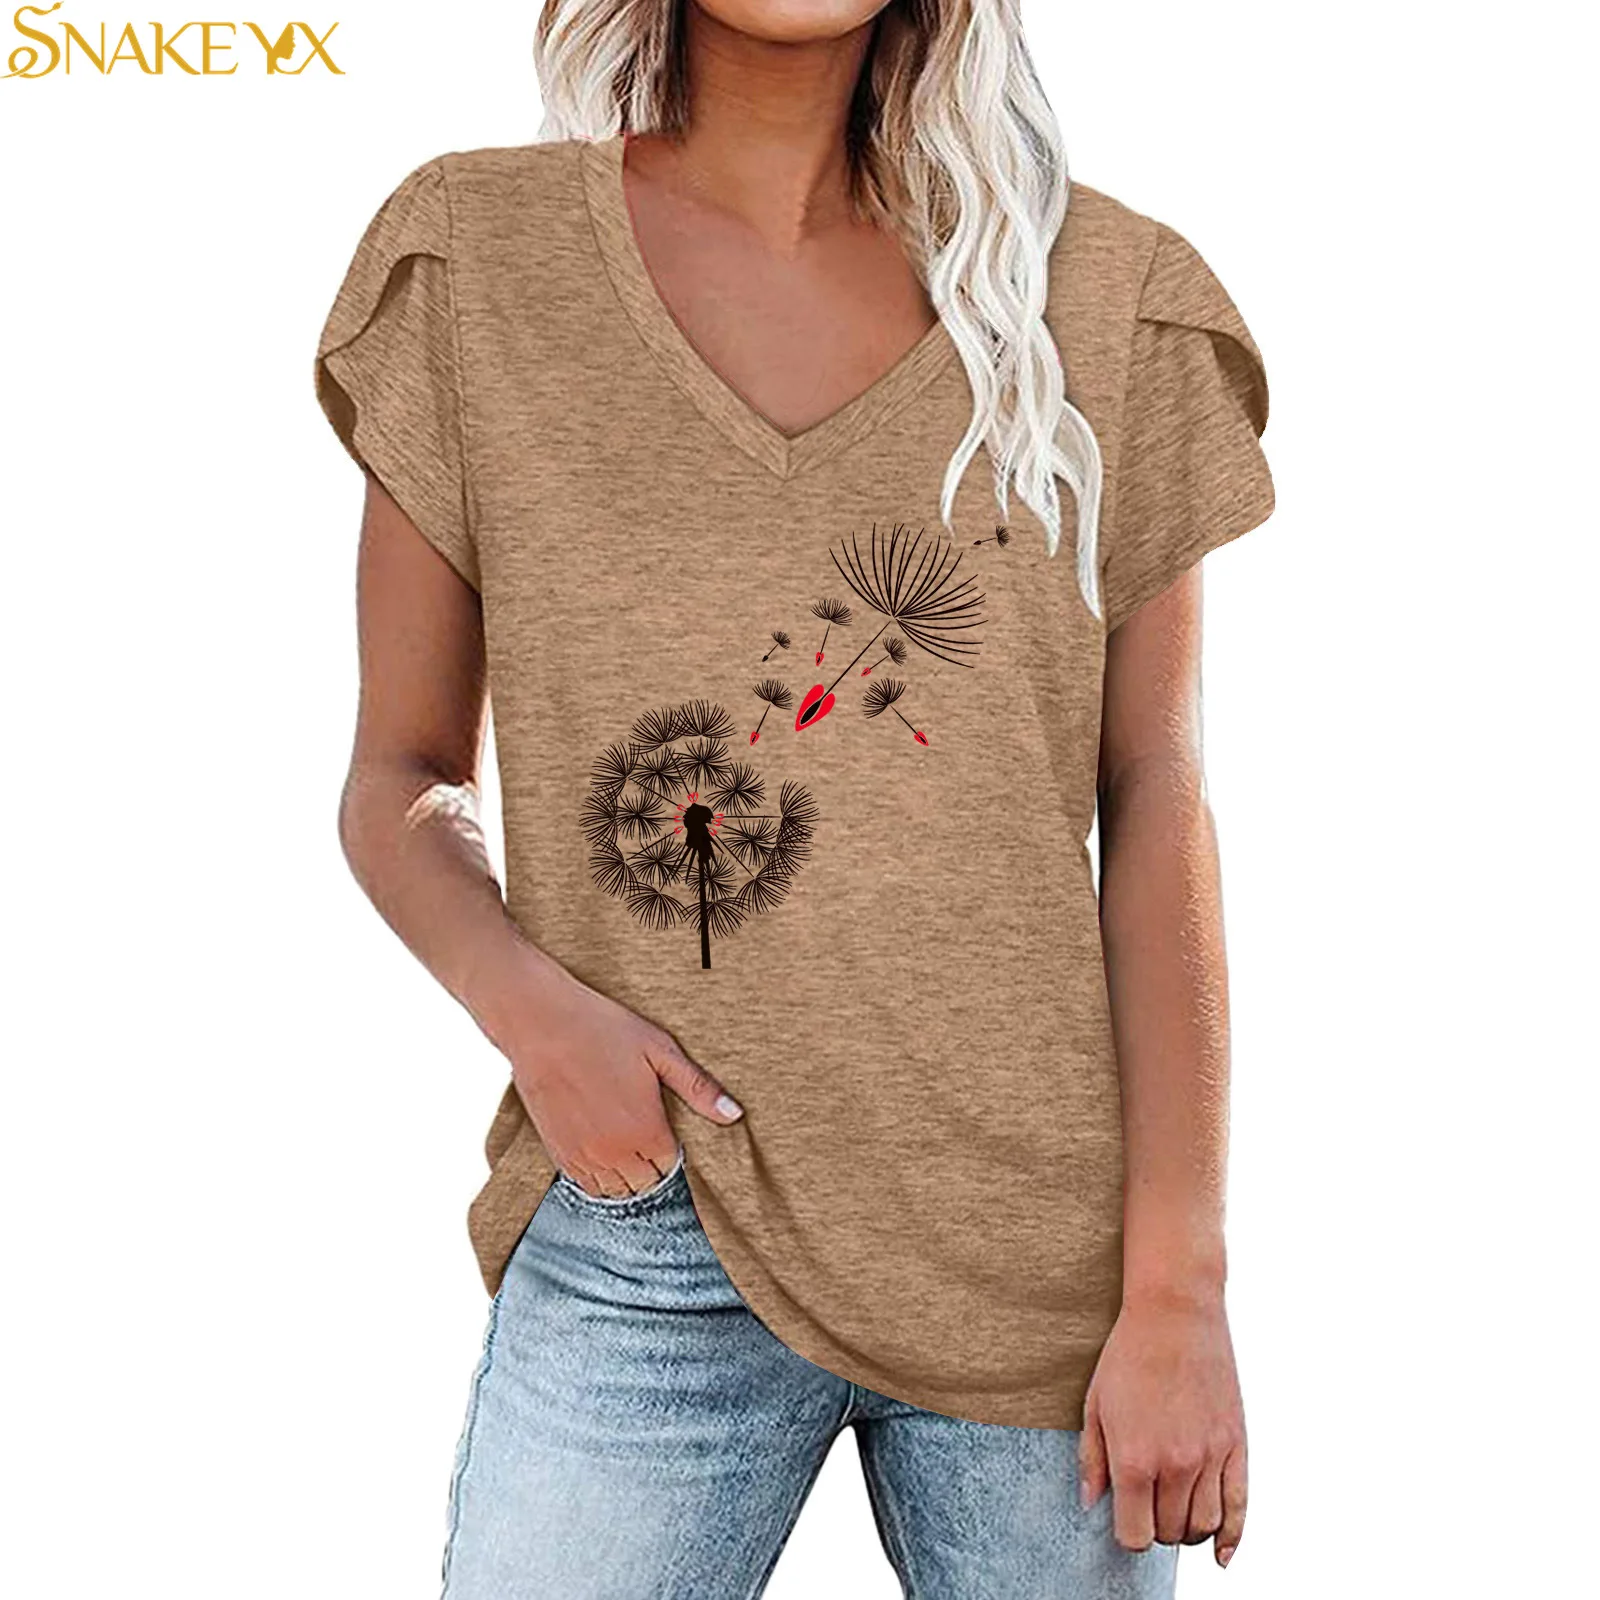 

SNAKE YX 2022 Summer New Dandelion Creative Printing V-neck Petal Short-sleeved T-shirt Women